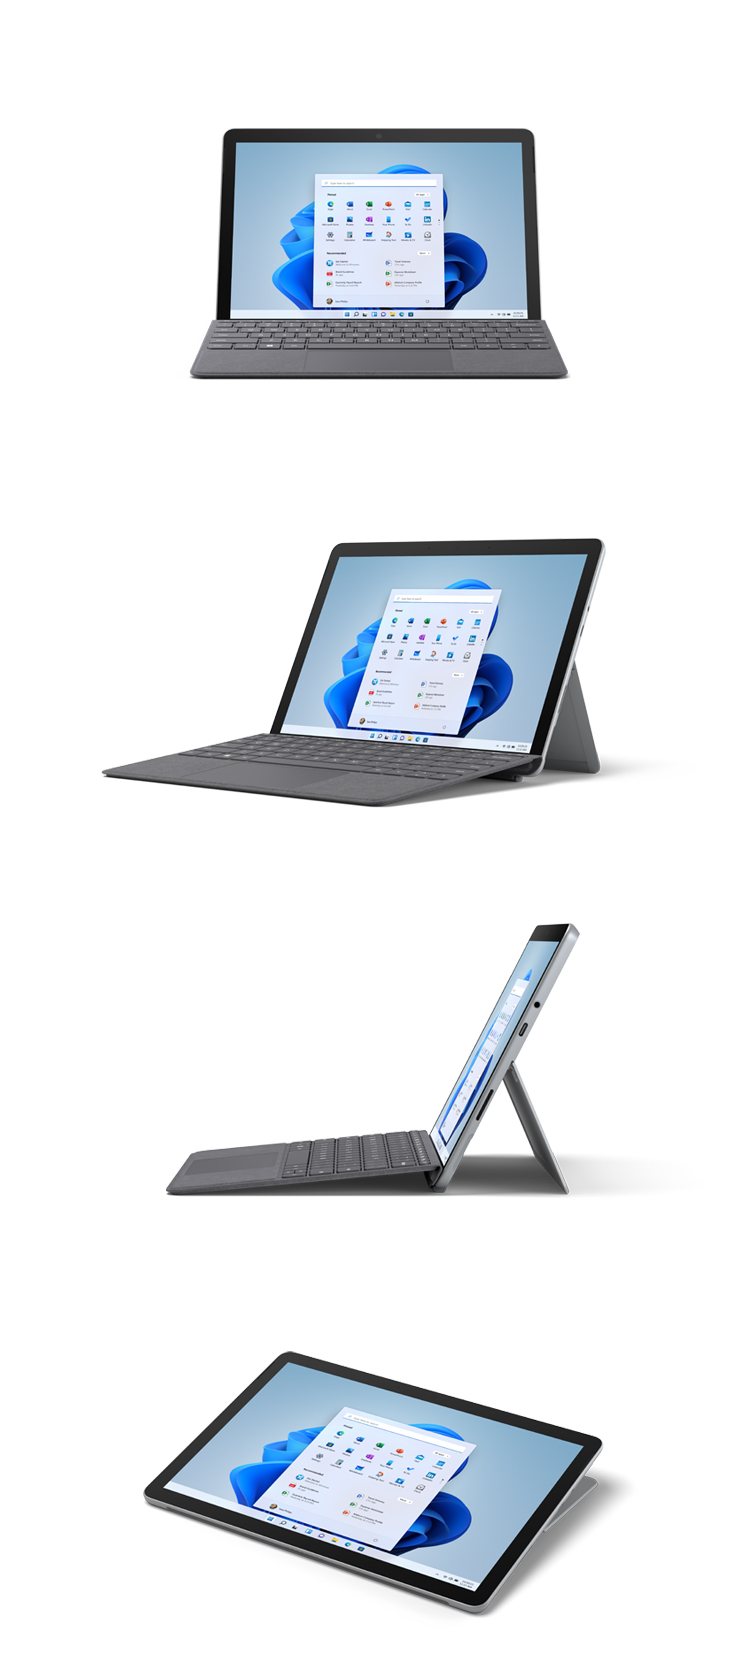 Abbildungen des Surface Go 3 mit Type Cover in Platin von vorne, schräg, von der Seite und im Studio-Modus.